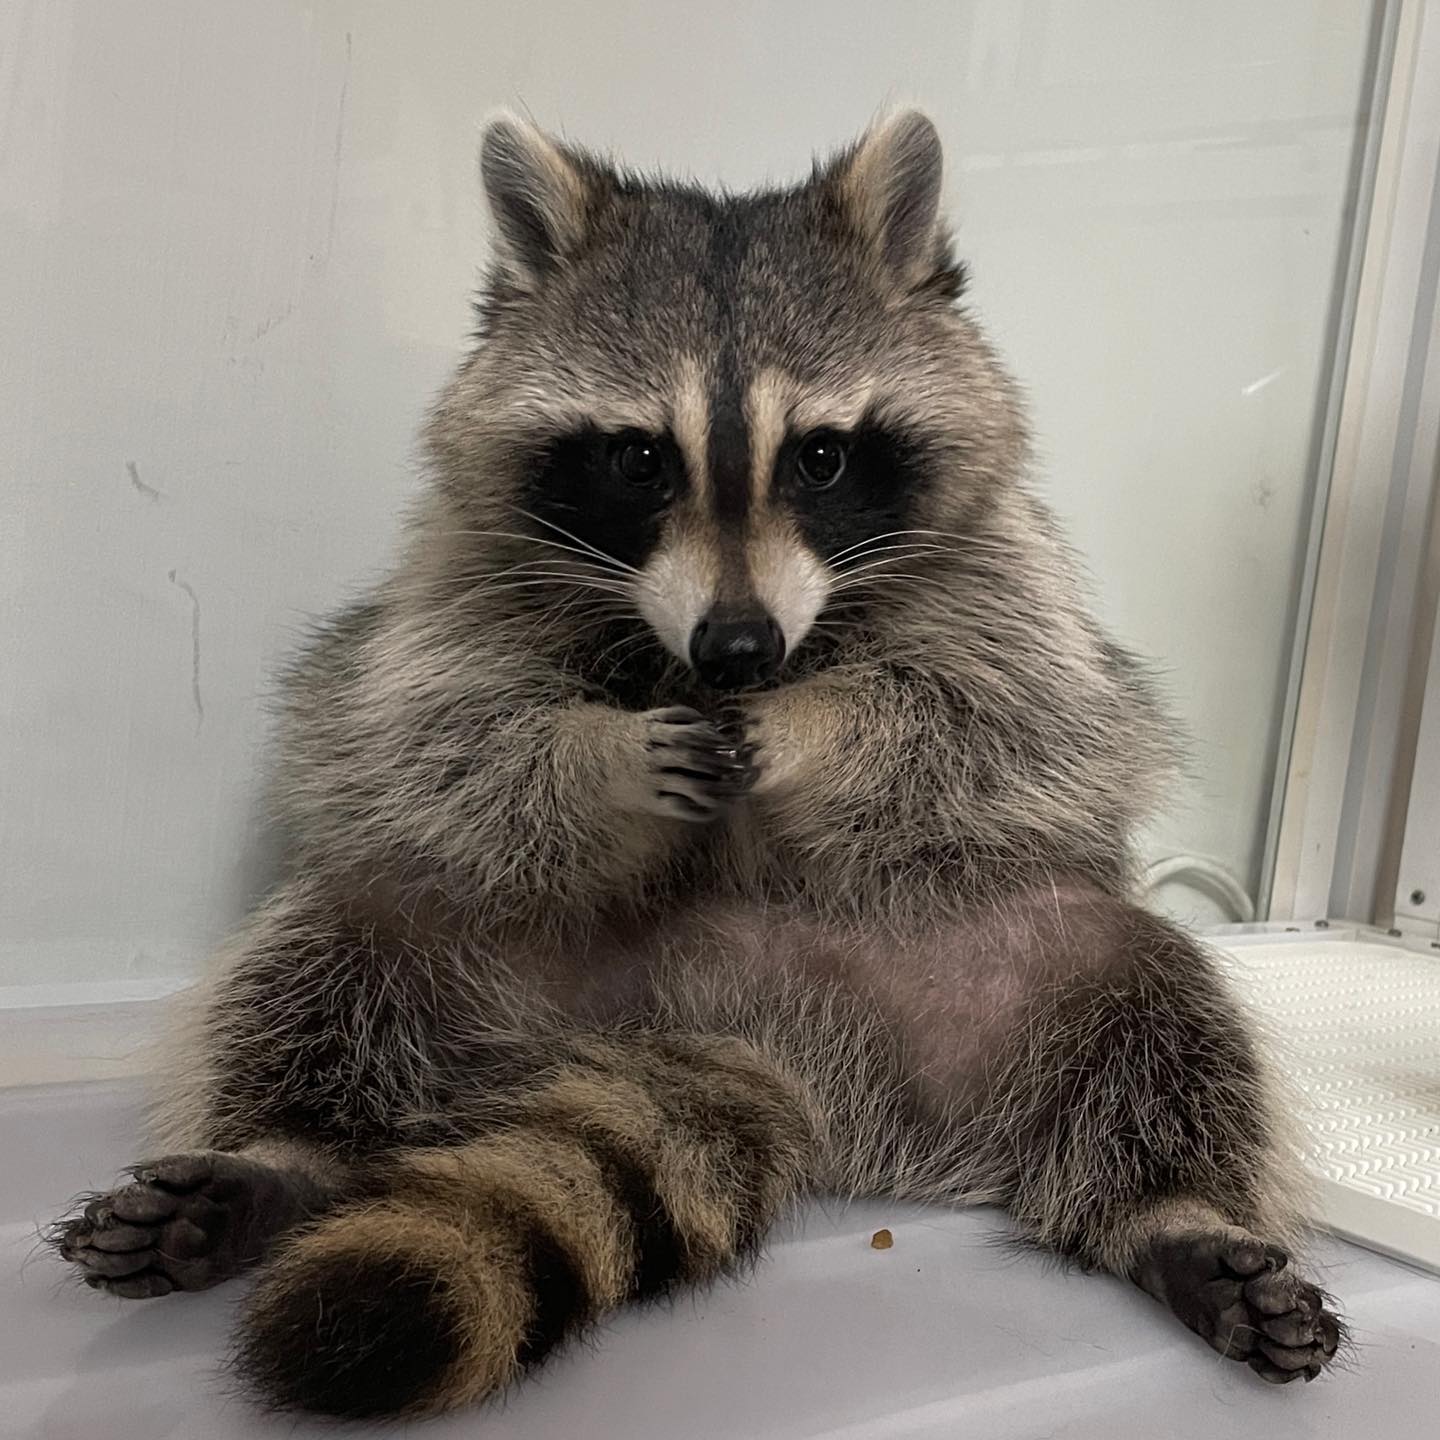 An ashamed raccoon.